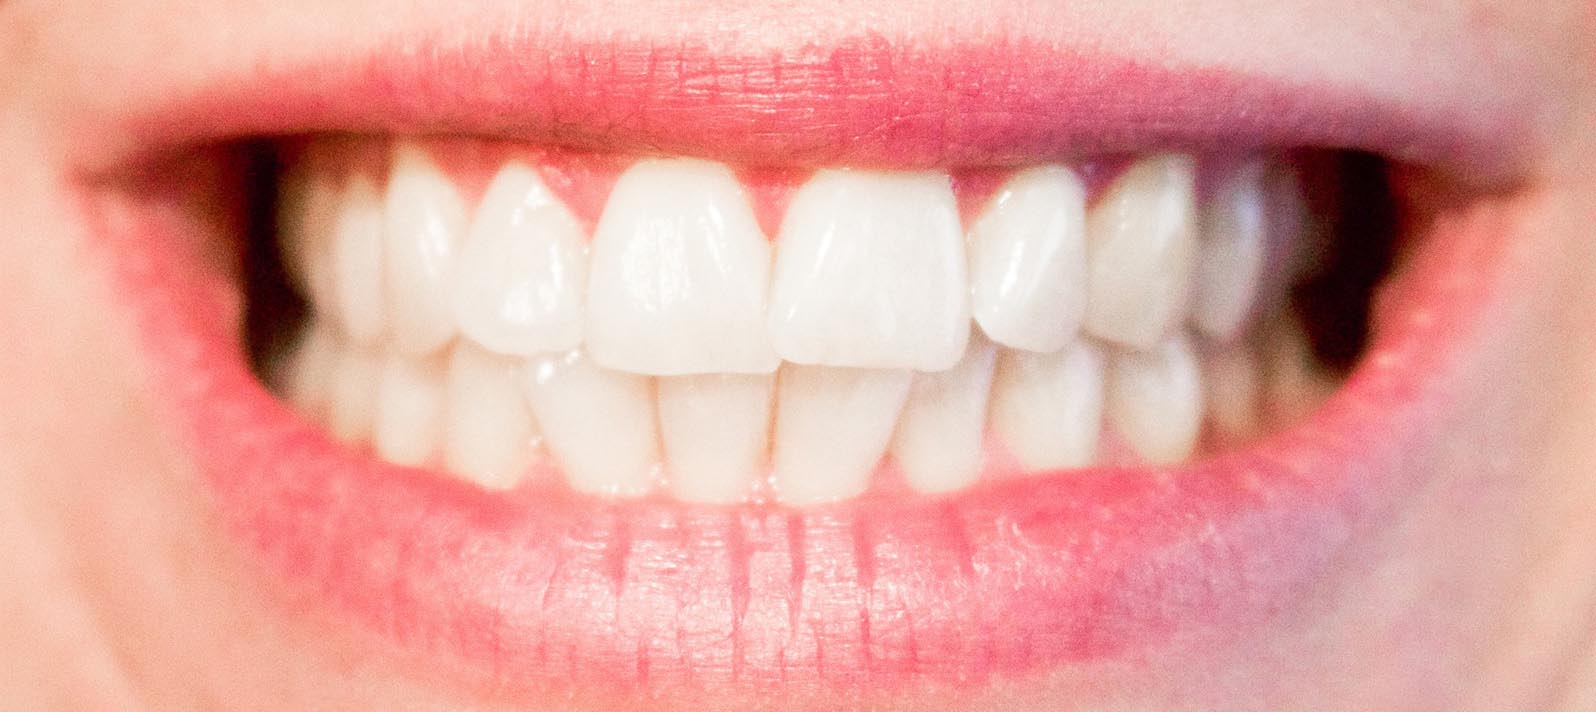 Maloclusión, un problema que se puede tratar a tiempo - Dental Roca